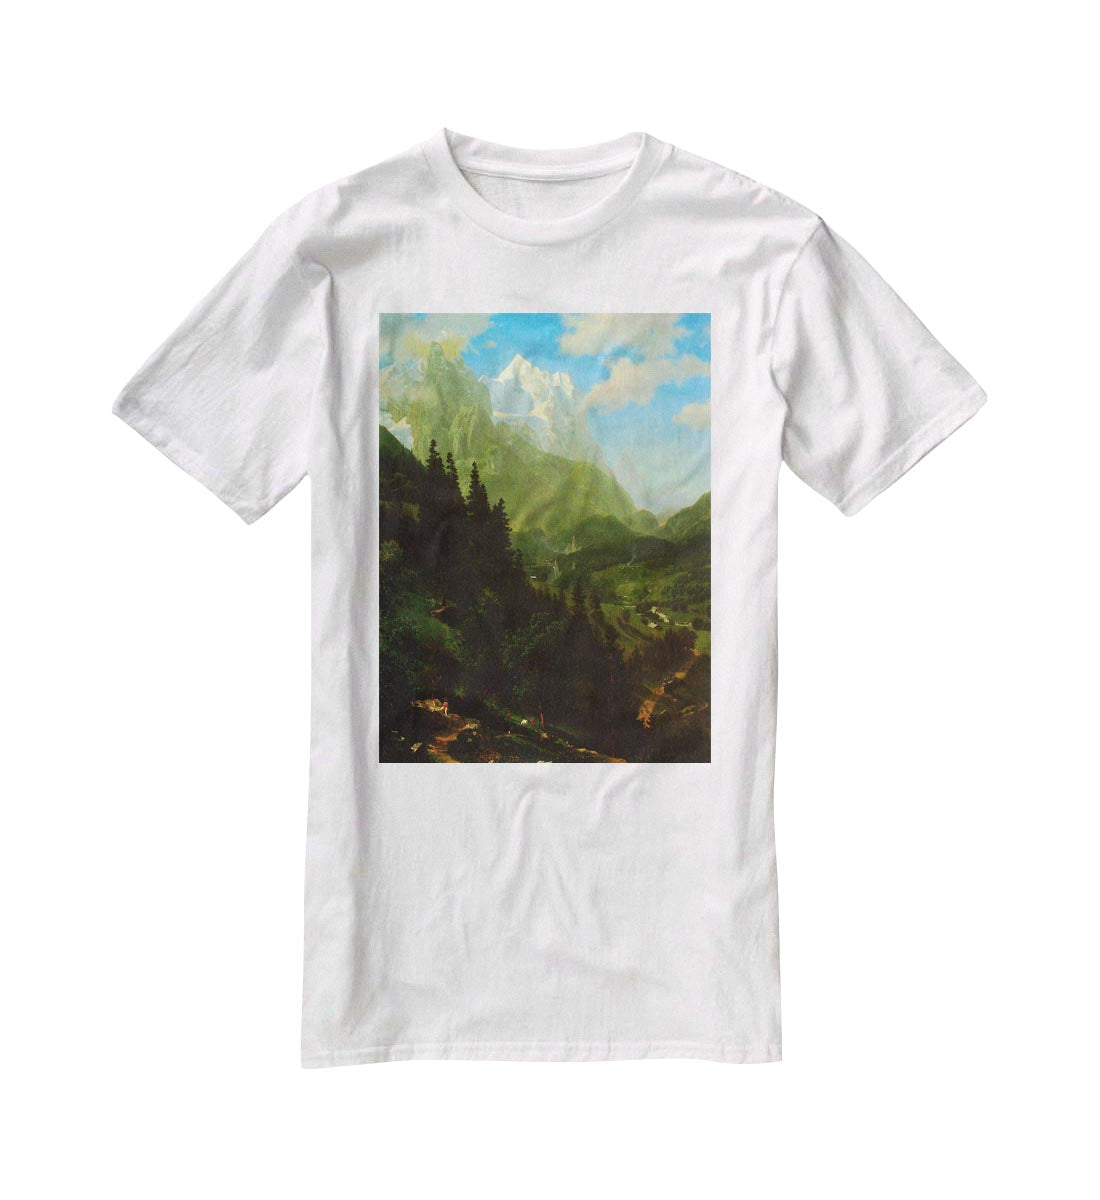 Matterhorn by Bierstadt T-Shirt - Canvas Art Rocks - 5